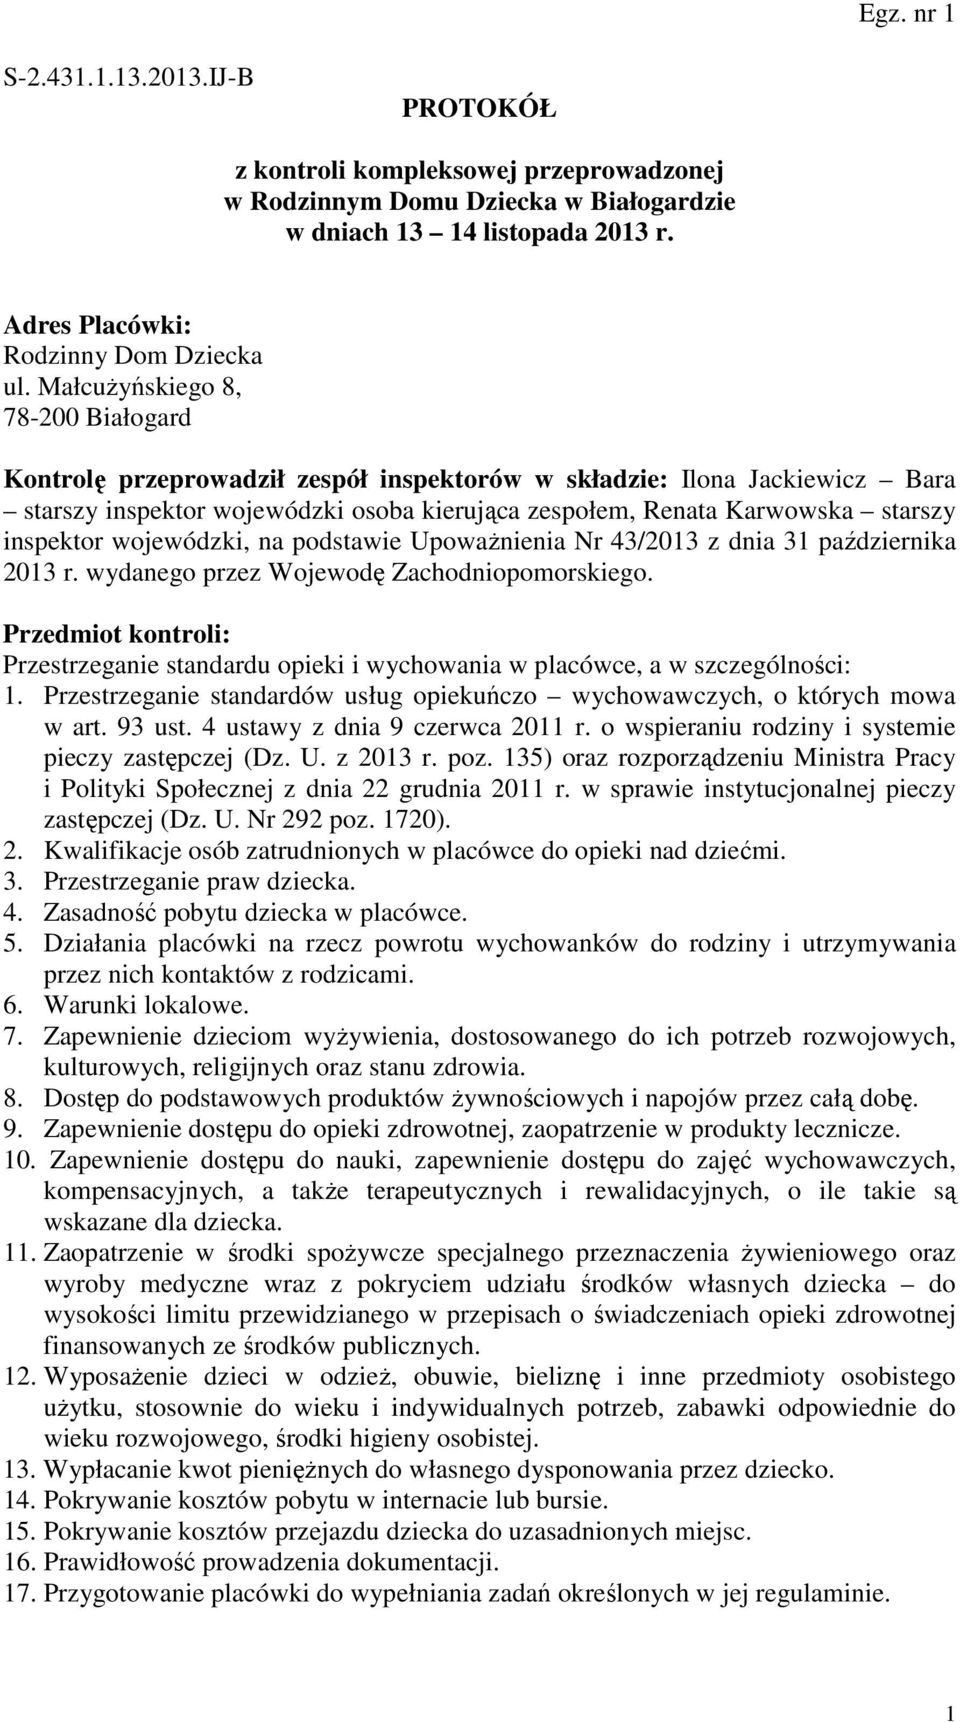 inspektor wojewódzki, na podstawie Upoważnienia Nr 43/2013 z dnia 31 października 2013 r. wydanego przez Wojewodę Zachodniopomorskiego.